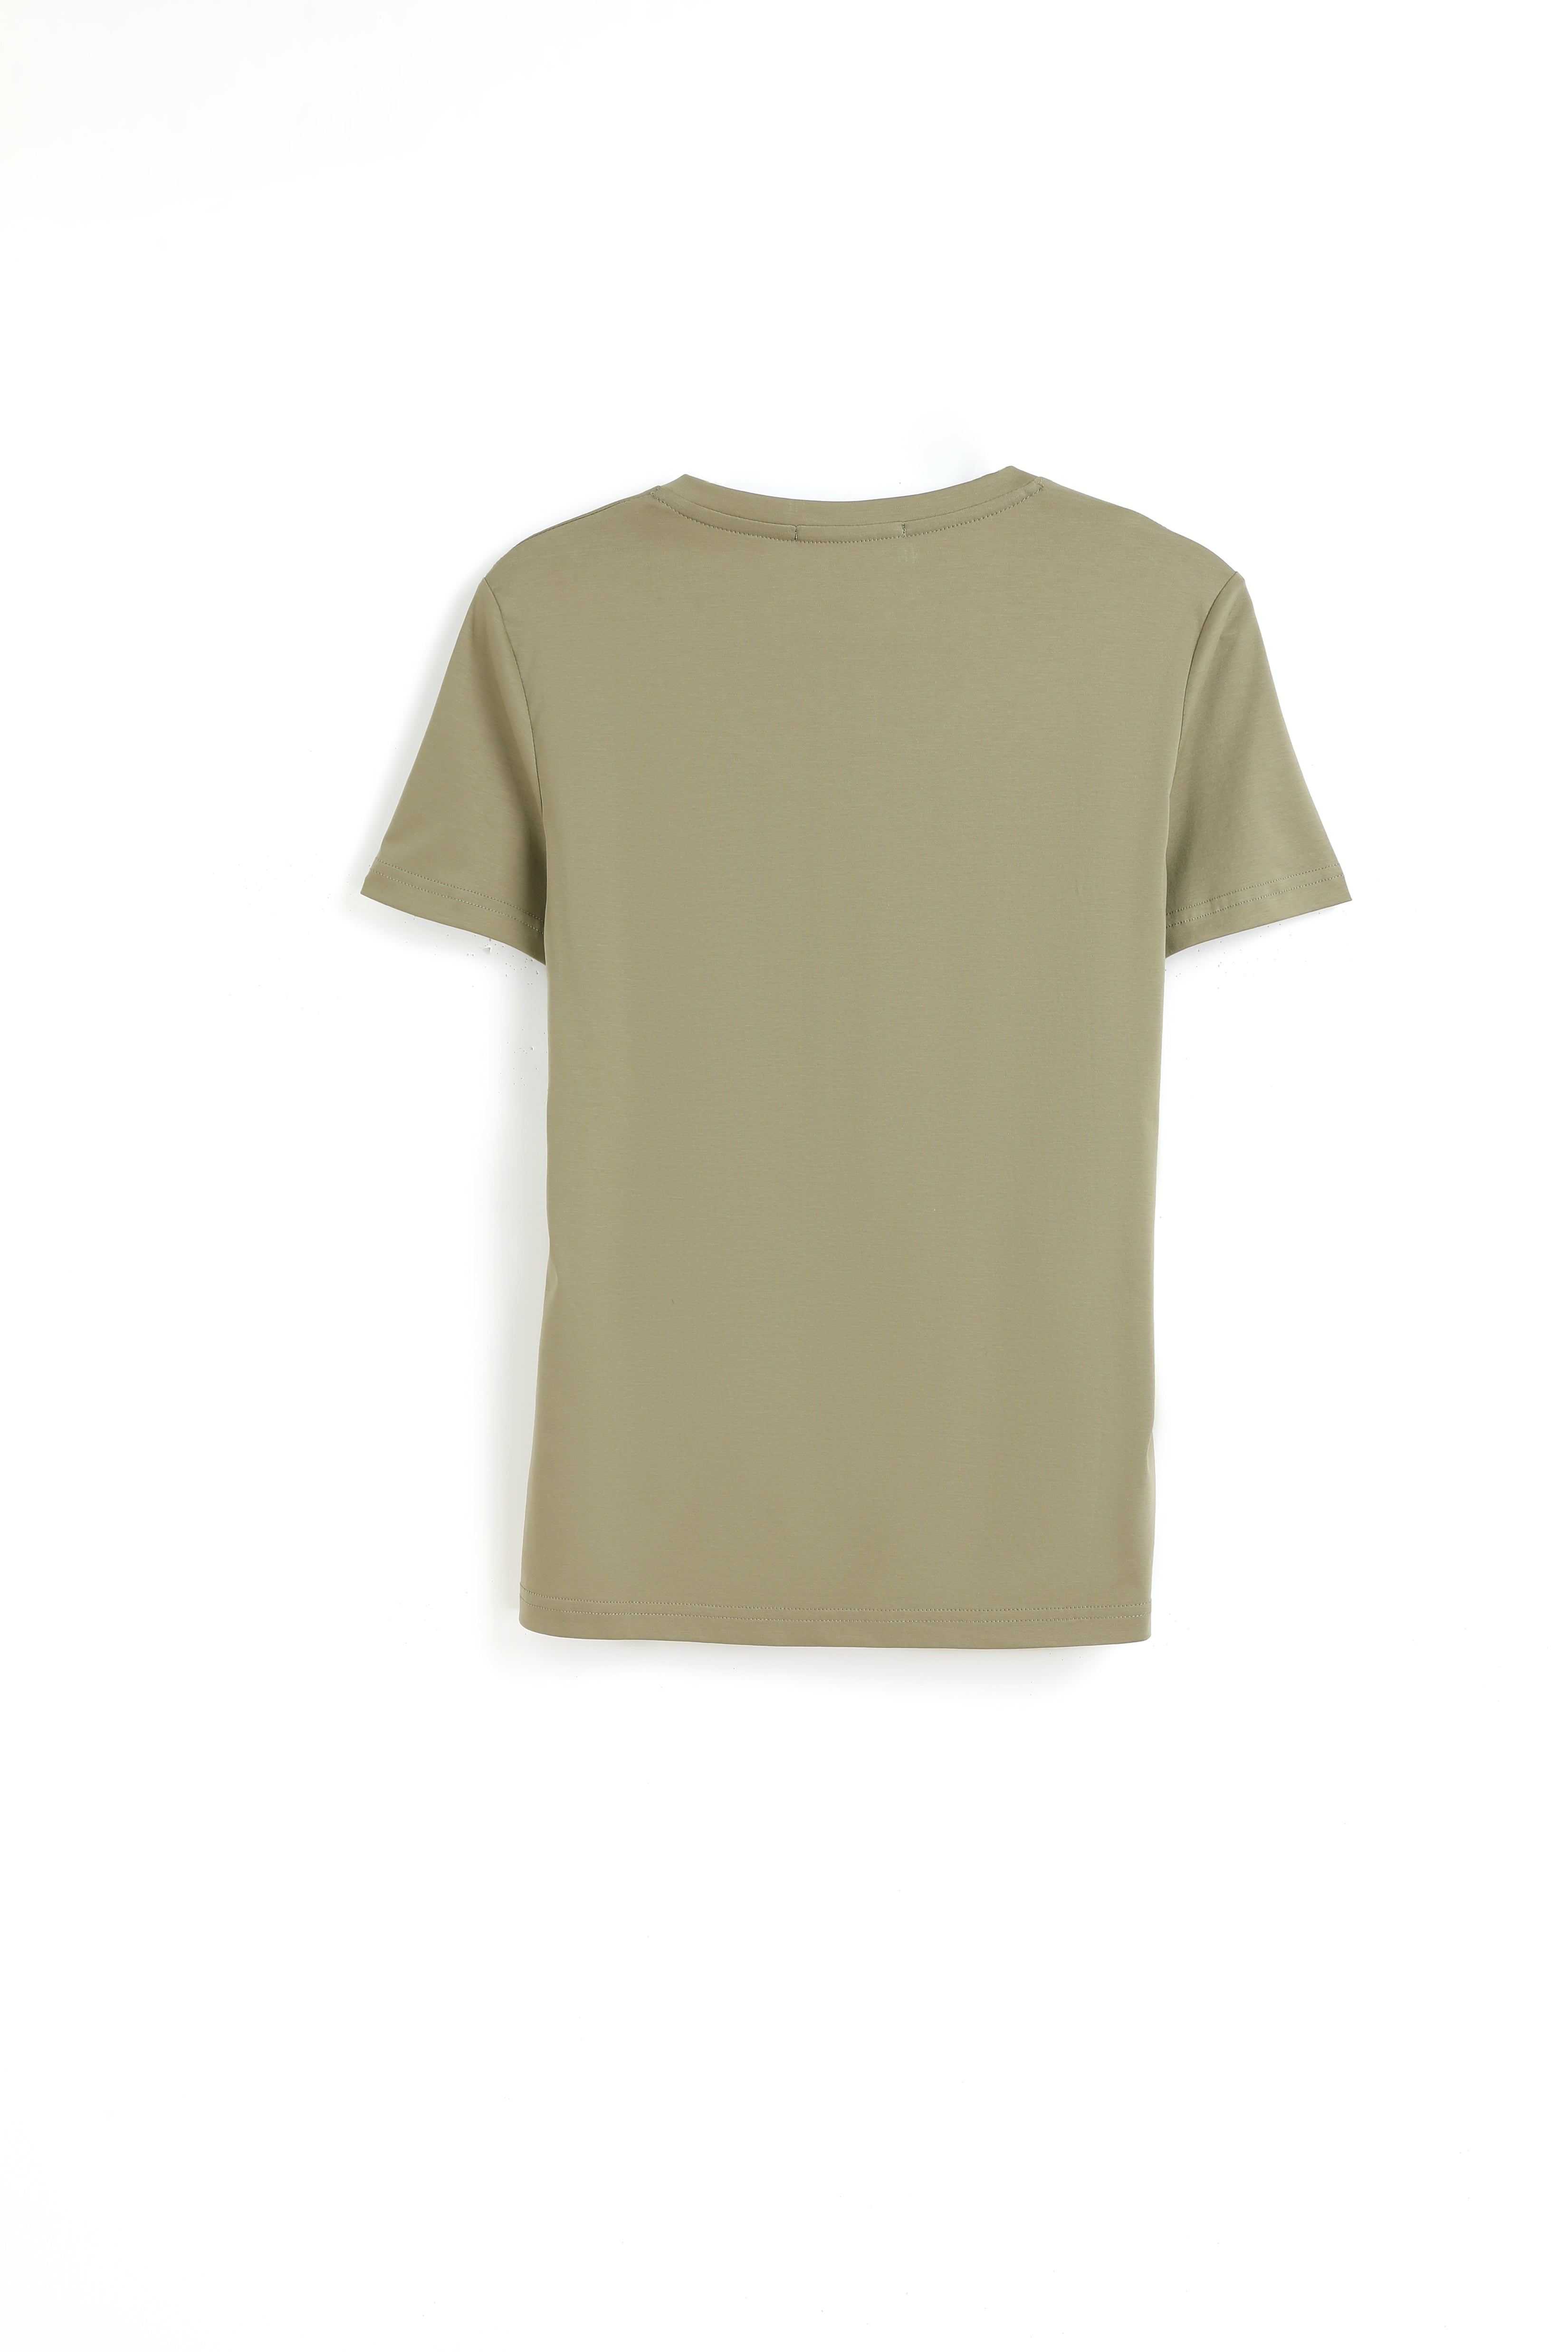 Grand V-Neck Cotton T-Shirt (160g)